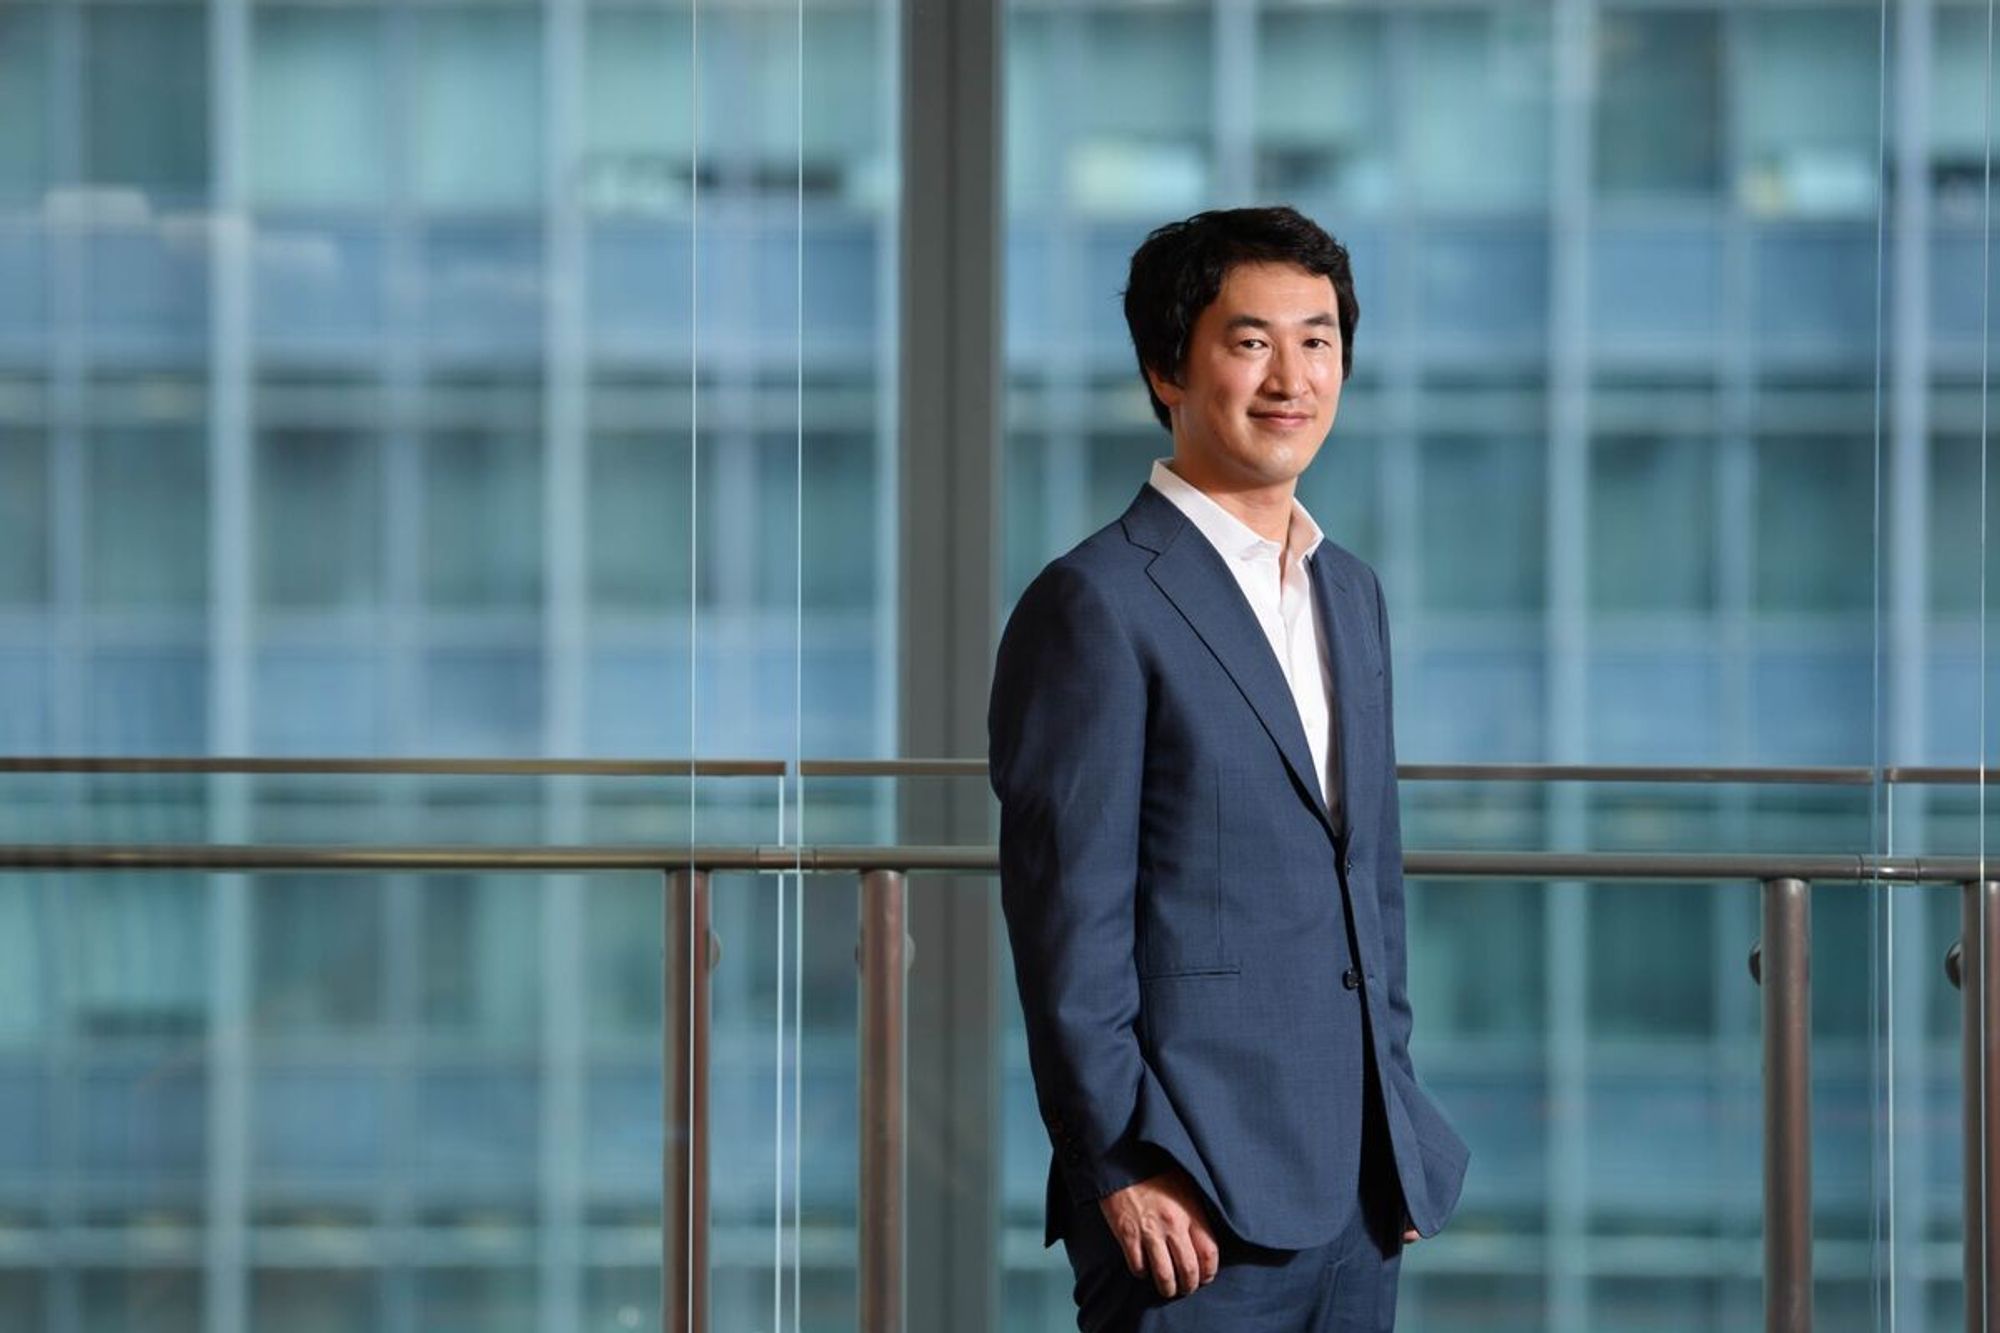 15年ぶり快挙達成の起業家、岸田首相の起業支援は長期的な継続必要